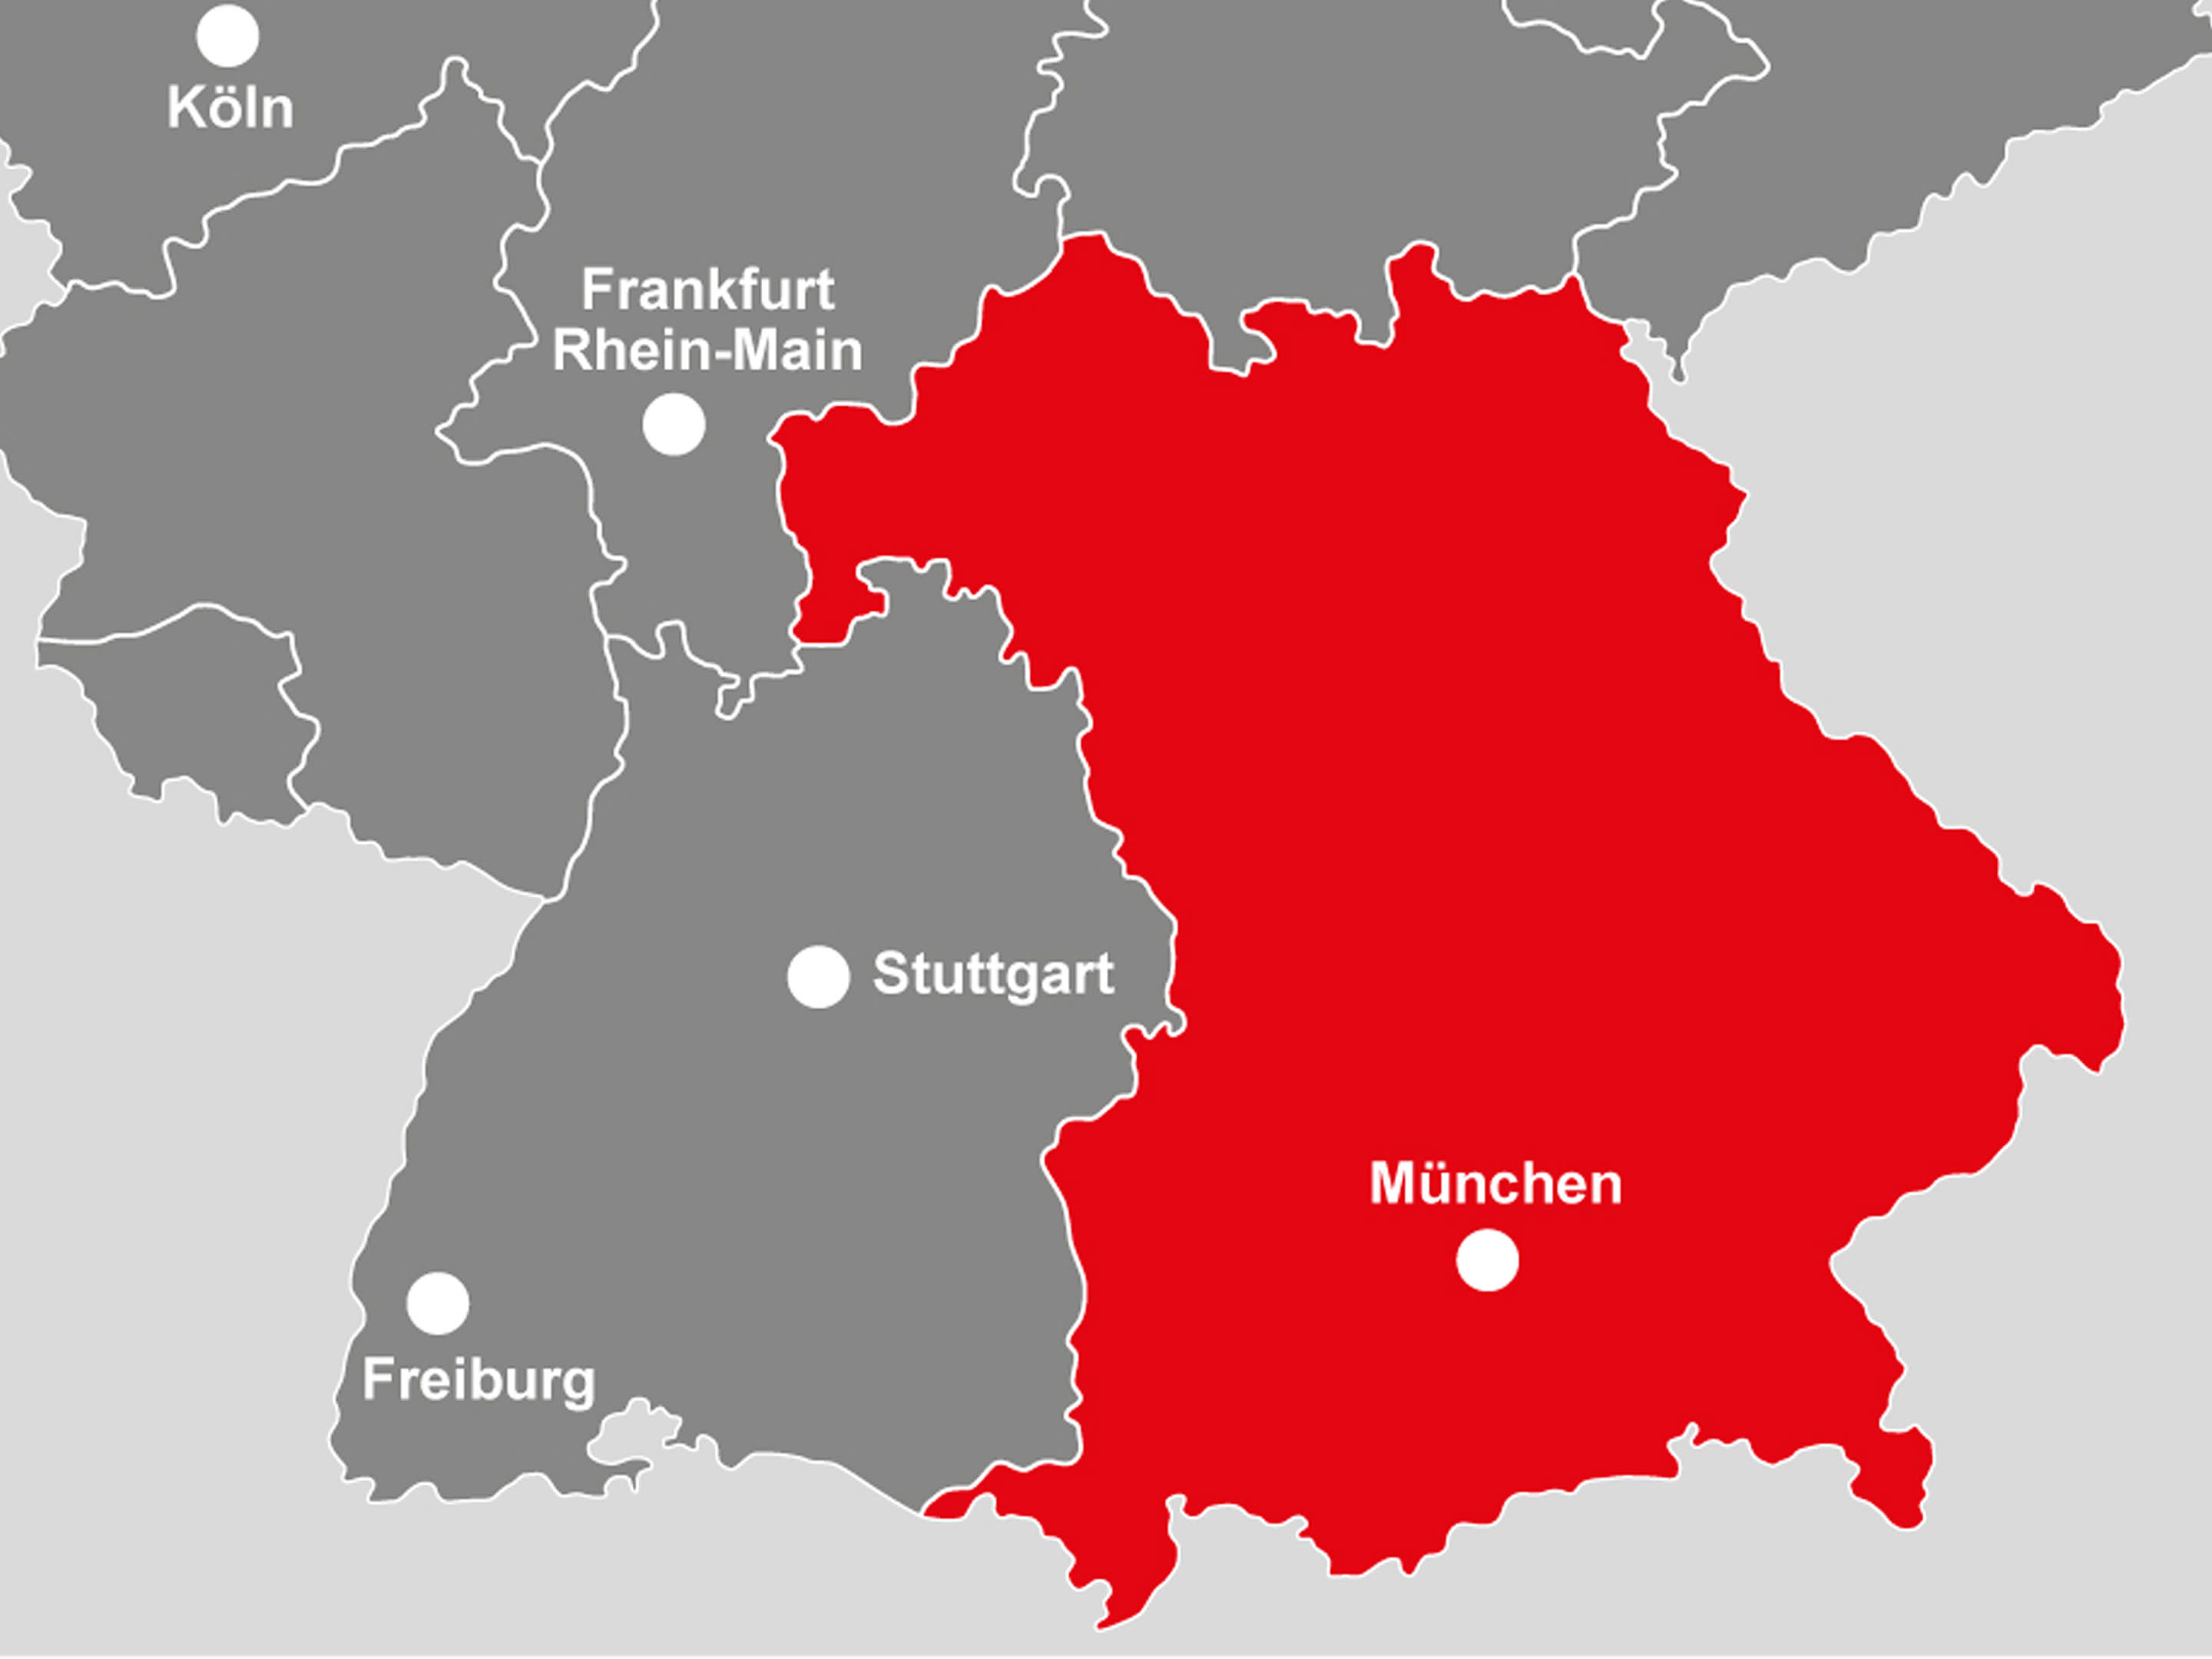 Bild:  Die Landkarte zeigt Bayern, dort wo der Bereich München ankauft  